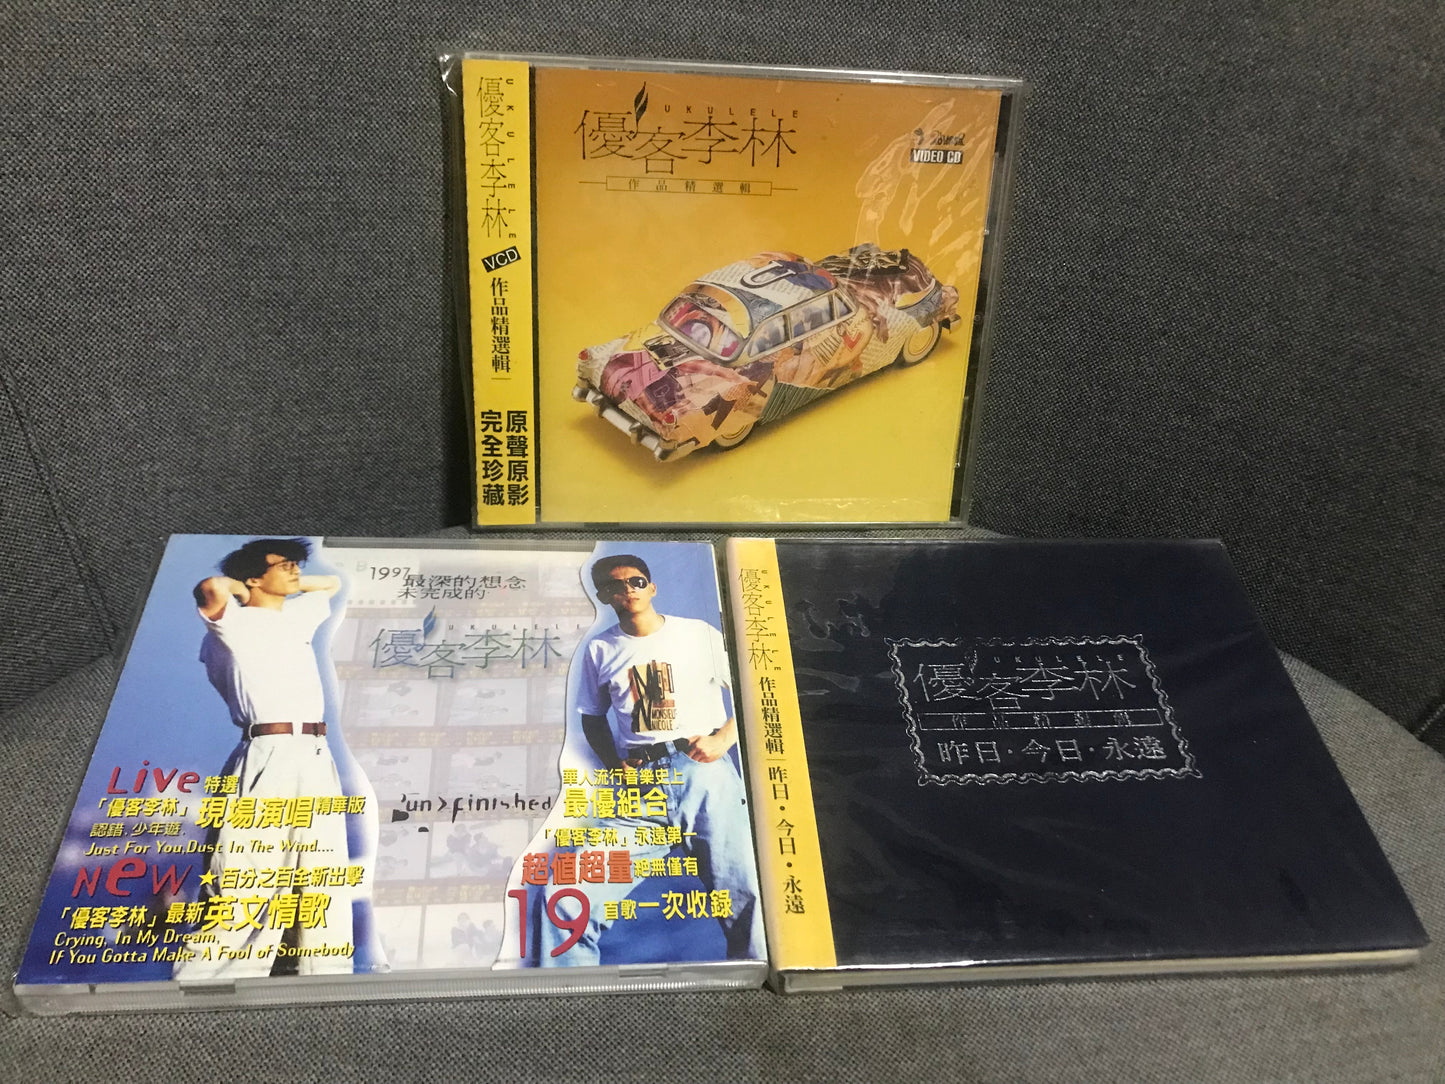 [絕對完整珍藏] 優客李林Ukulele 國語專輯4張、英文專輯2張、精選專輯2張、MV作品VCD 1張 **共8CD＋1 VCD**